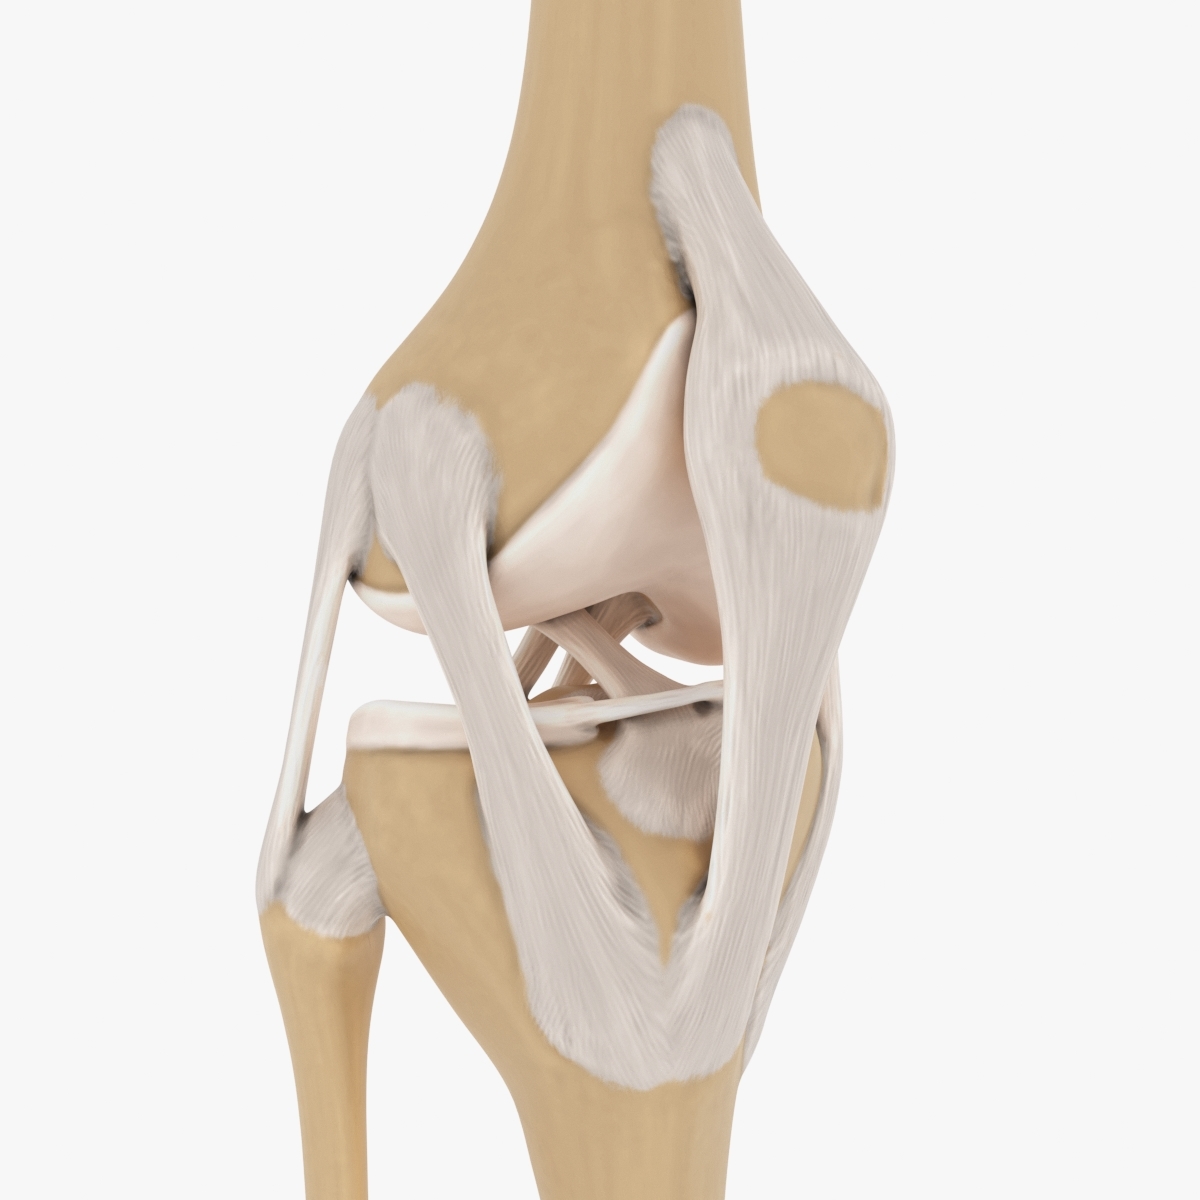 膝关节3d解剖图图片